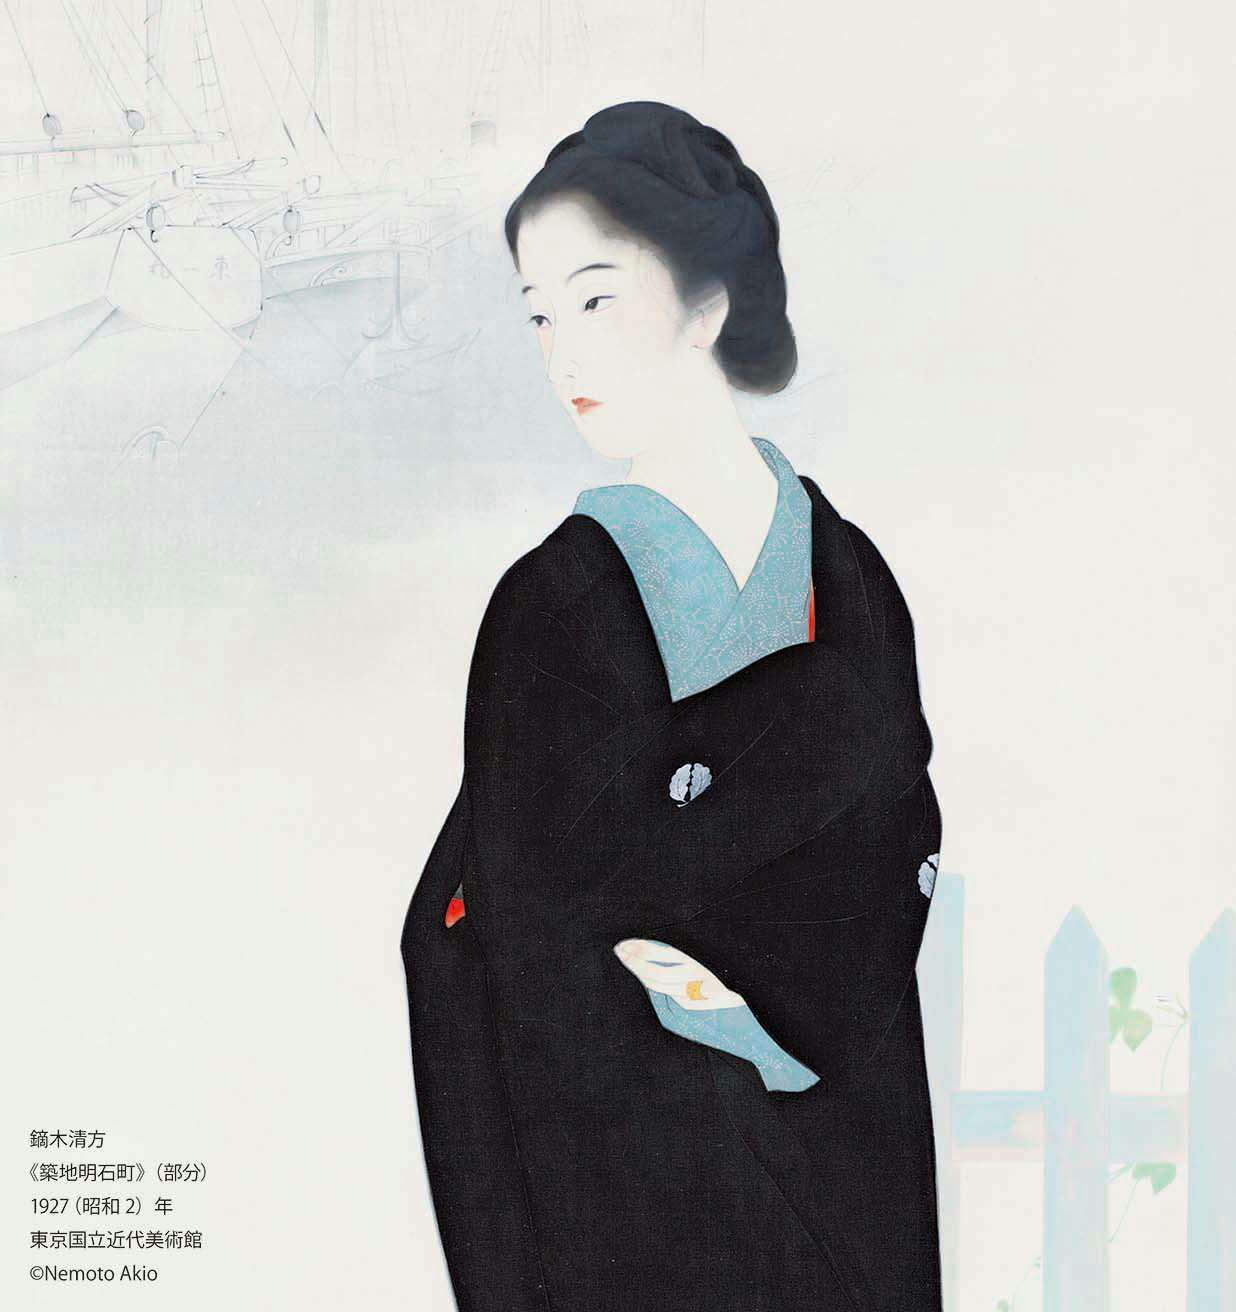 「没後50年 鏑木清方展」が東京と京都の国立近代美術館で開催へ 